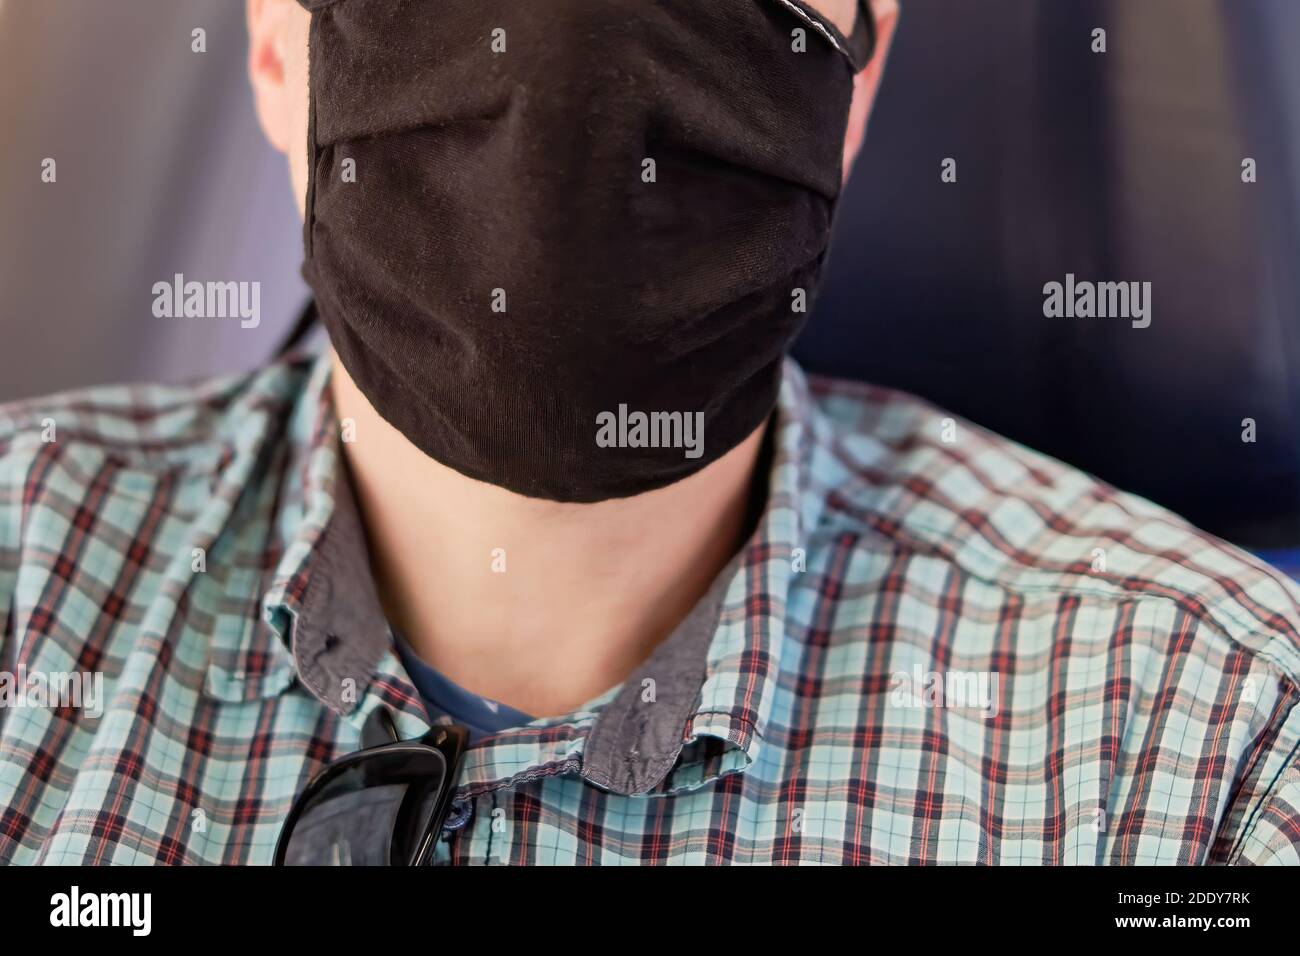 Visage humain avec masque comme protection de la bouche et du nez comme protection contre le corona ou le covid-19. Banque D'Images